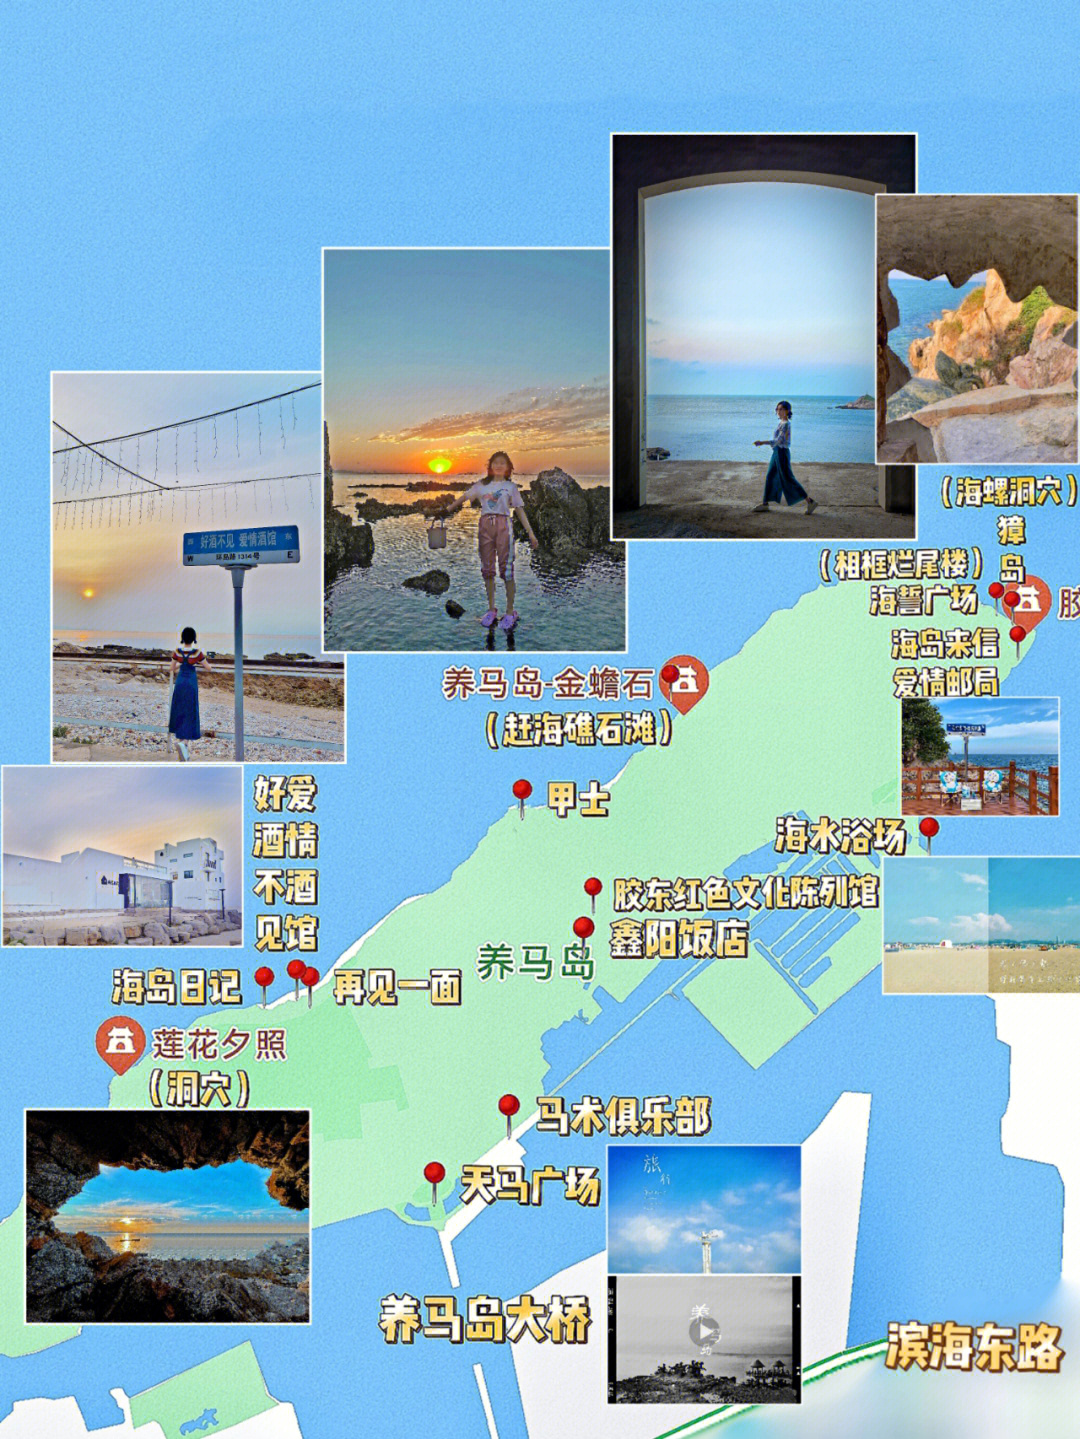 养马岛地图详细图片